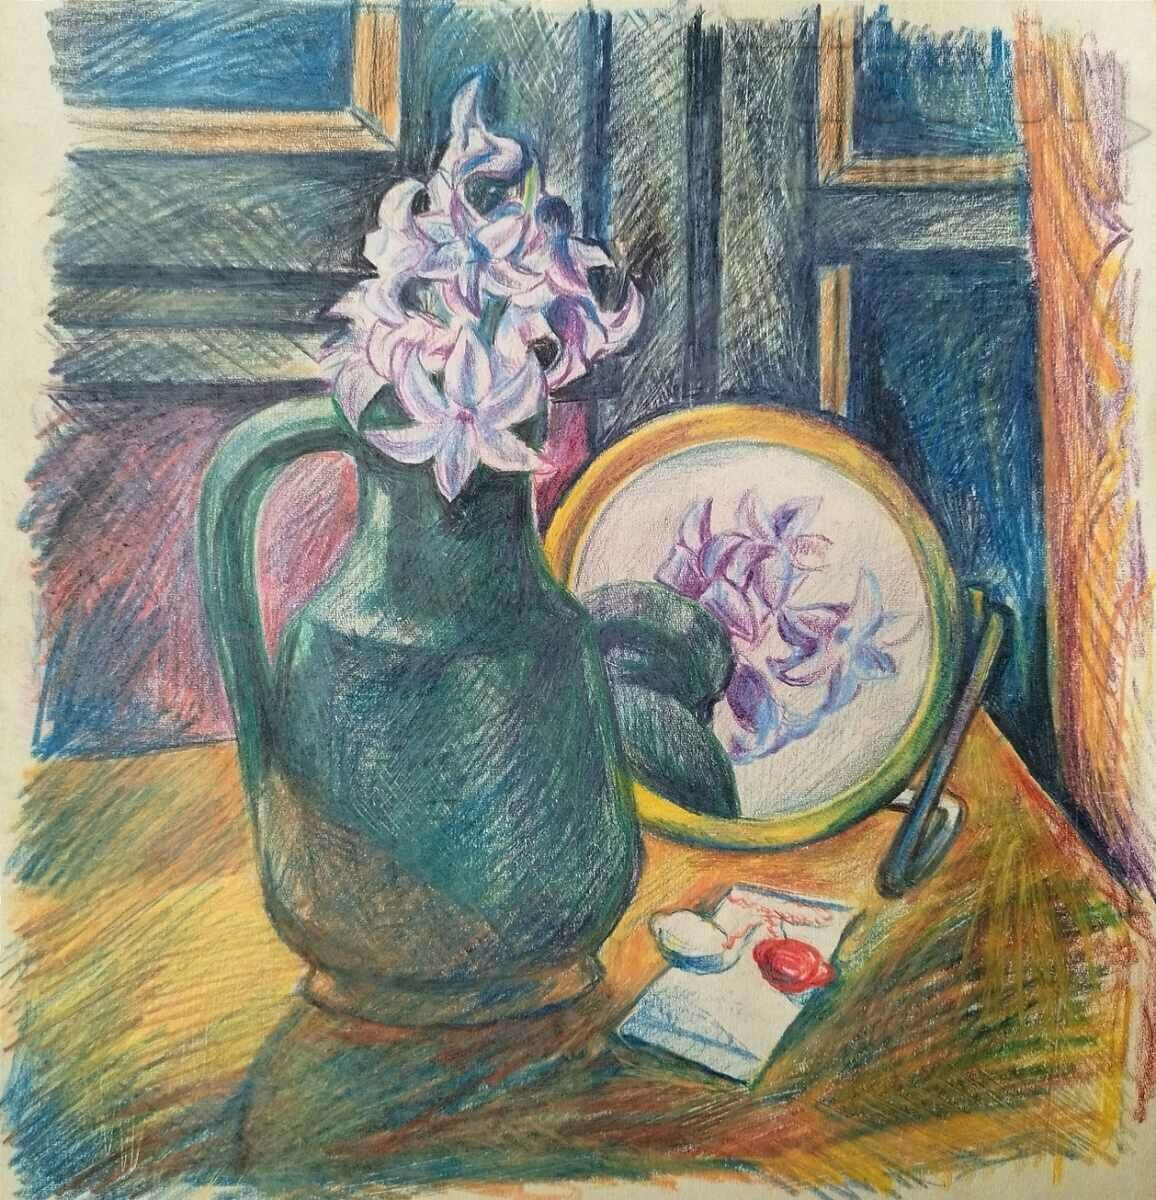 Pictură, ulcior, flori, anii 1970